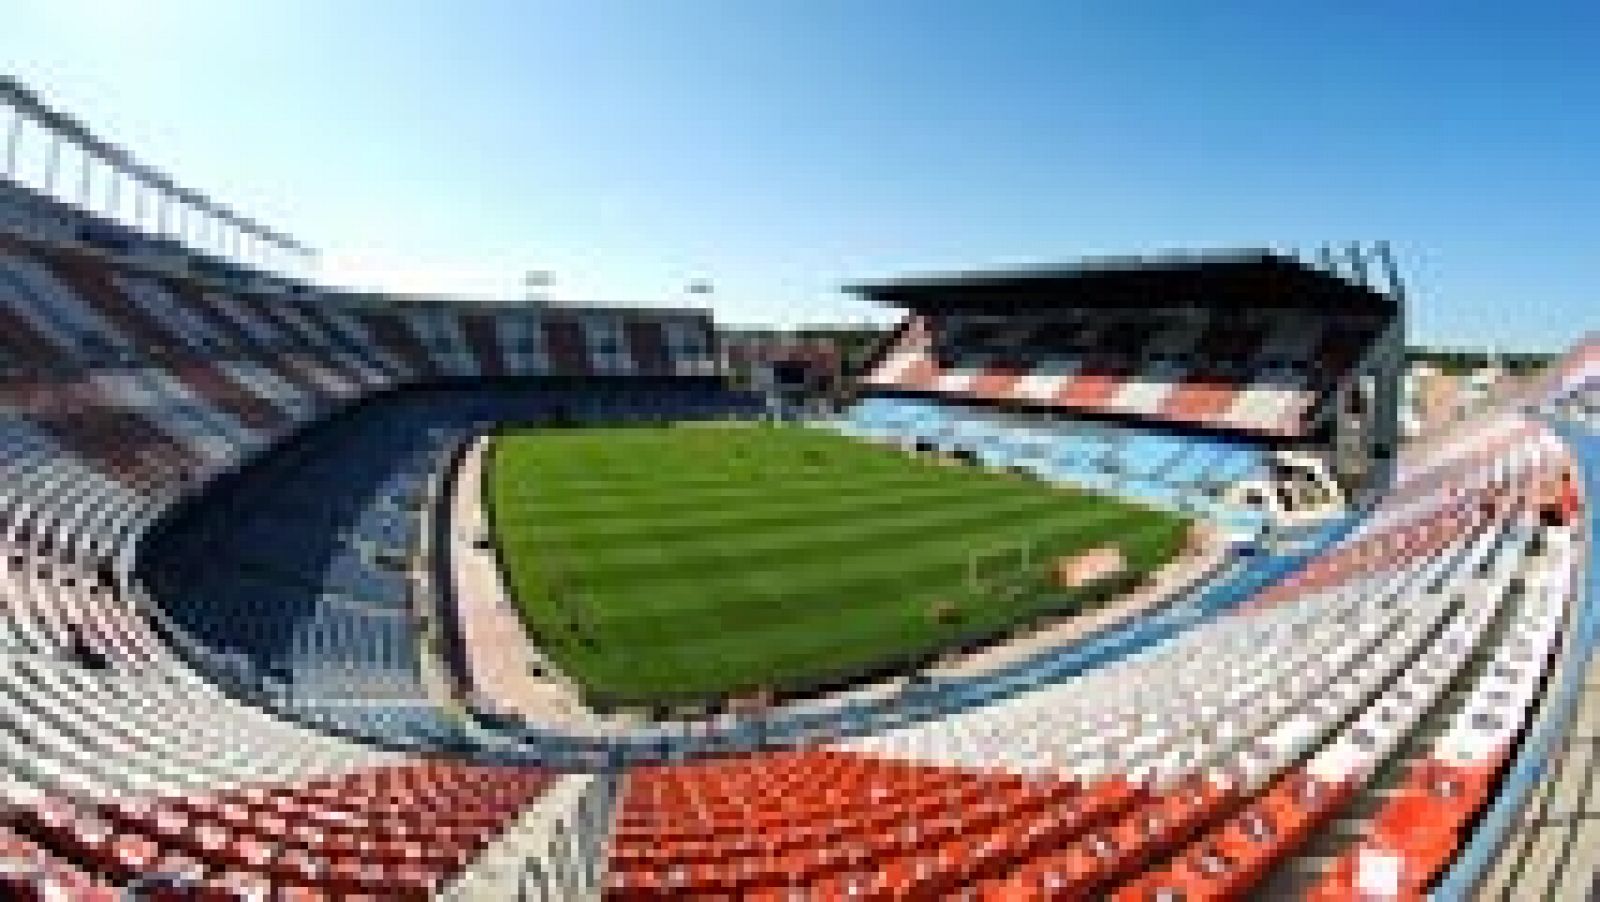 El estadio Vicente Calderón ha sido designado sede de la final de la Copa del Rey 2016/17, que disputarán el próximo 27 de mayo el Barcelona y el Alavés.